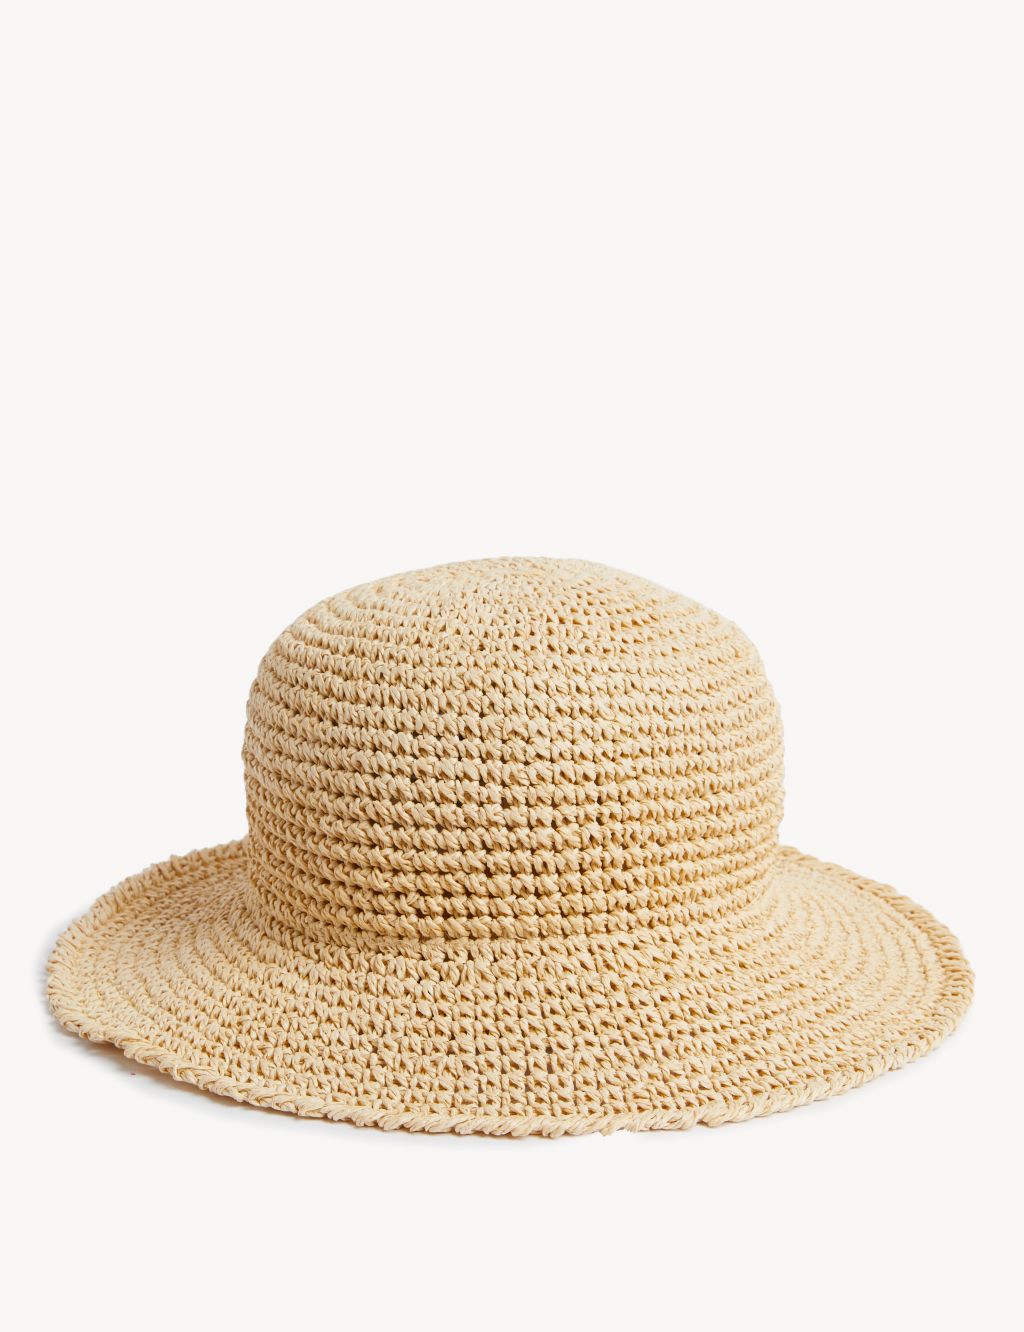 Packable Crochet Bucket Hat image 1